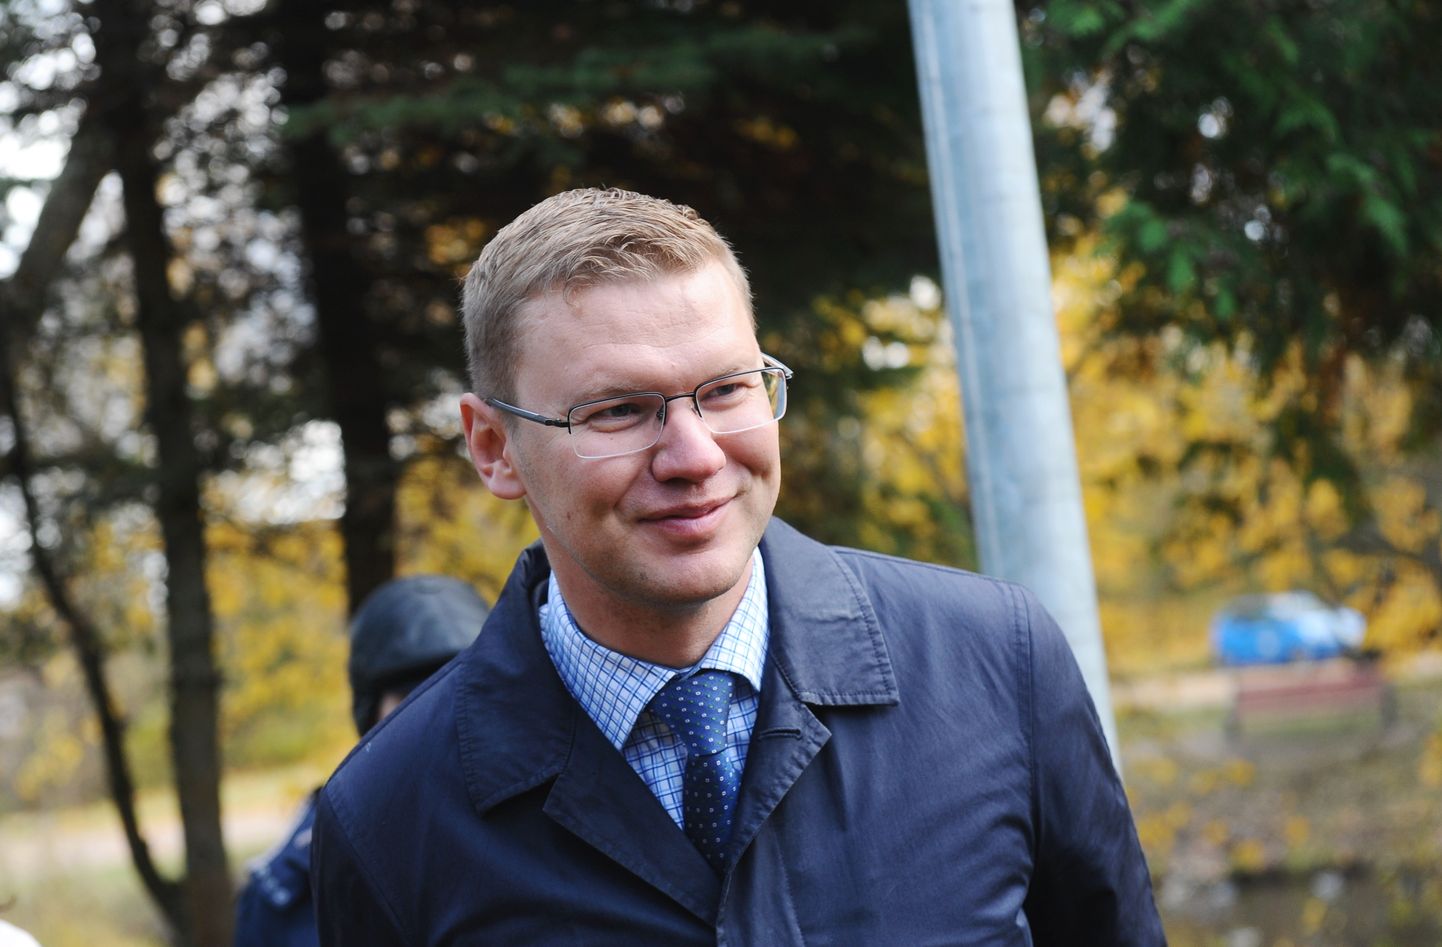 Aģentūras "Rīgas gaisma" direktors Jānis Drulle apmeklē Dārziņu apkaimi, lai novērtētu paveiktos darbus un lemtu par tālākajiem apkaimes labiekārtošanas plāniem.